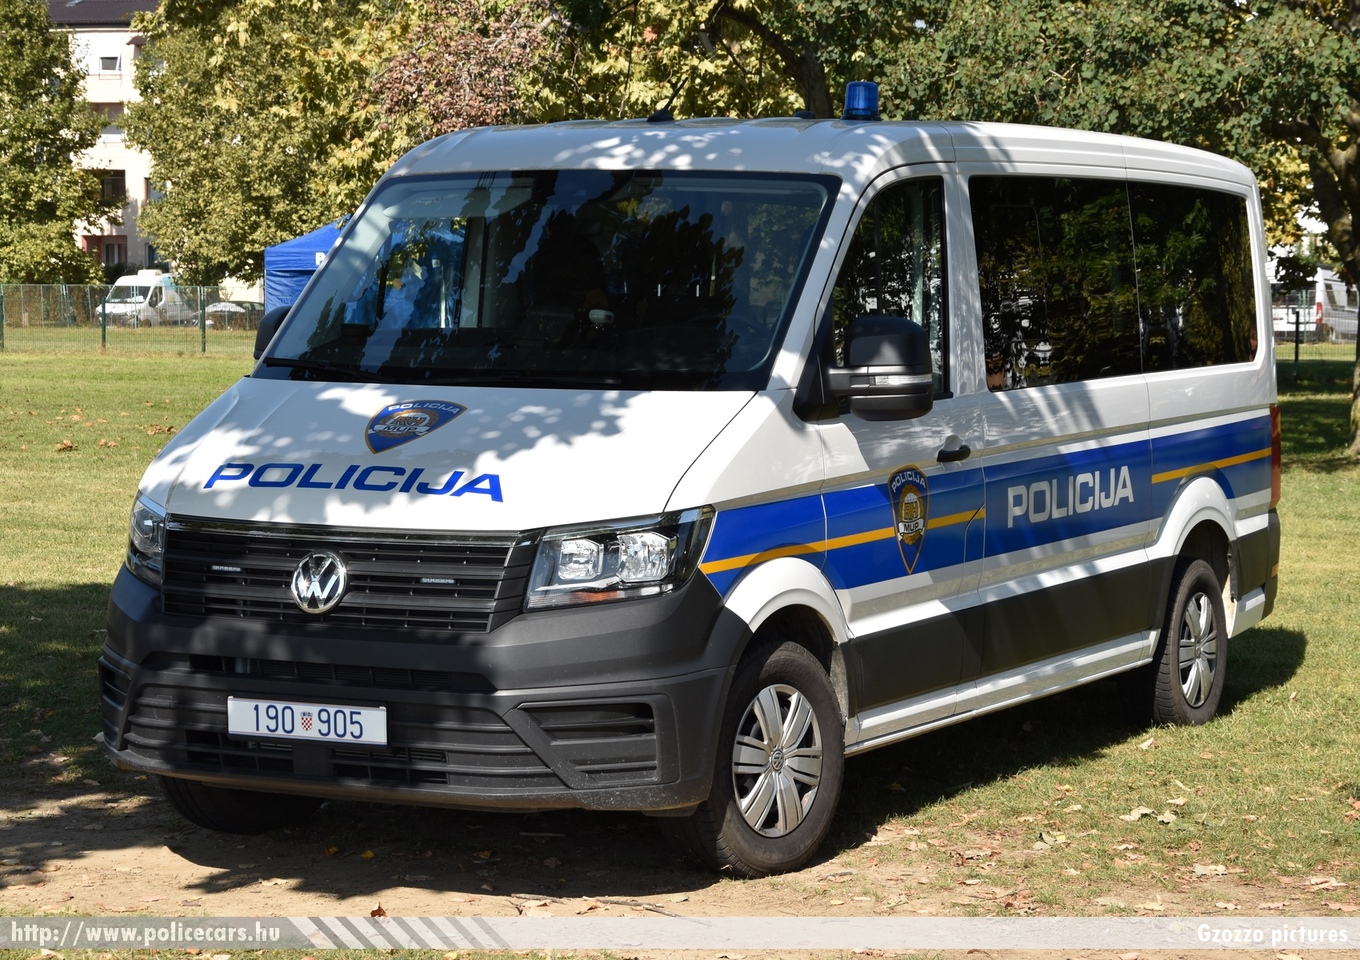 Volkswagen Crafter,  Hrvatska policija, fotó: Gzozzo pictures
Keywords: croatian rendőr rendőrautó rendőrség horvát Horvátország policecar police Croatia